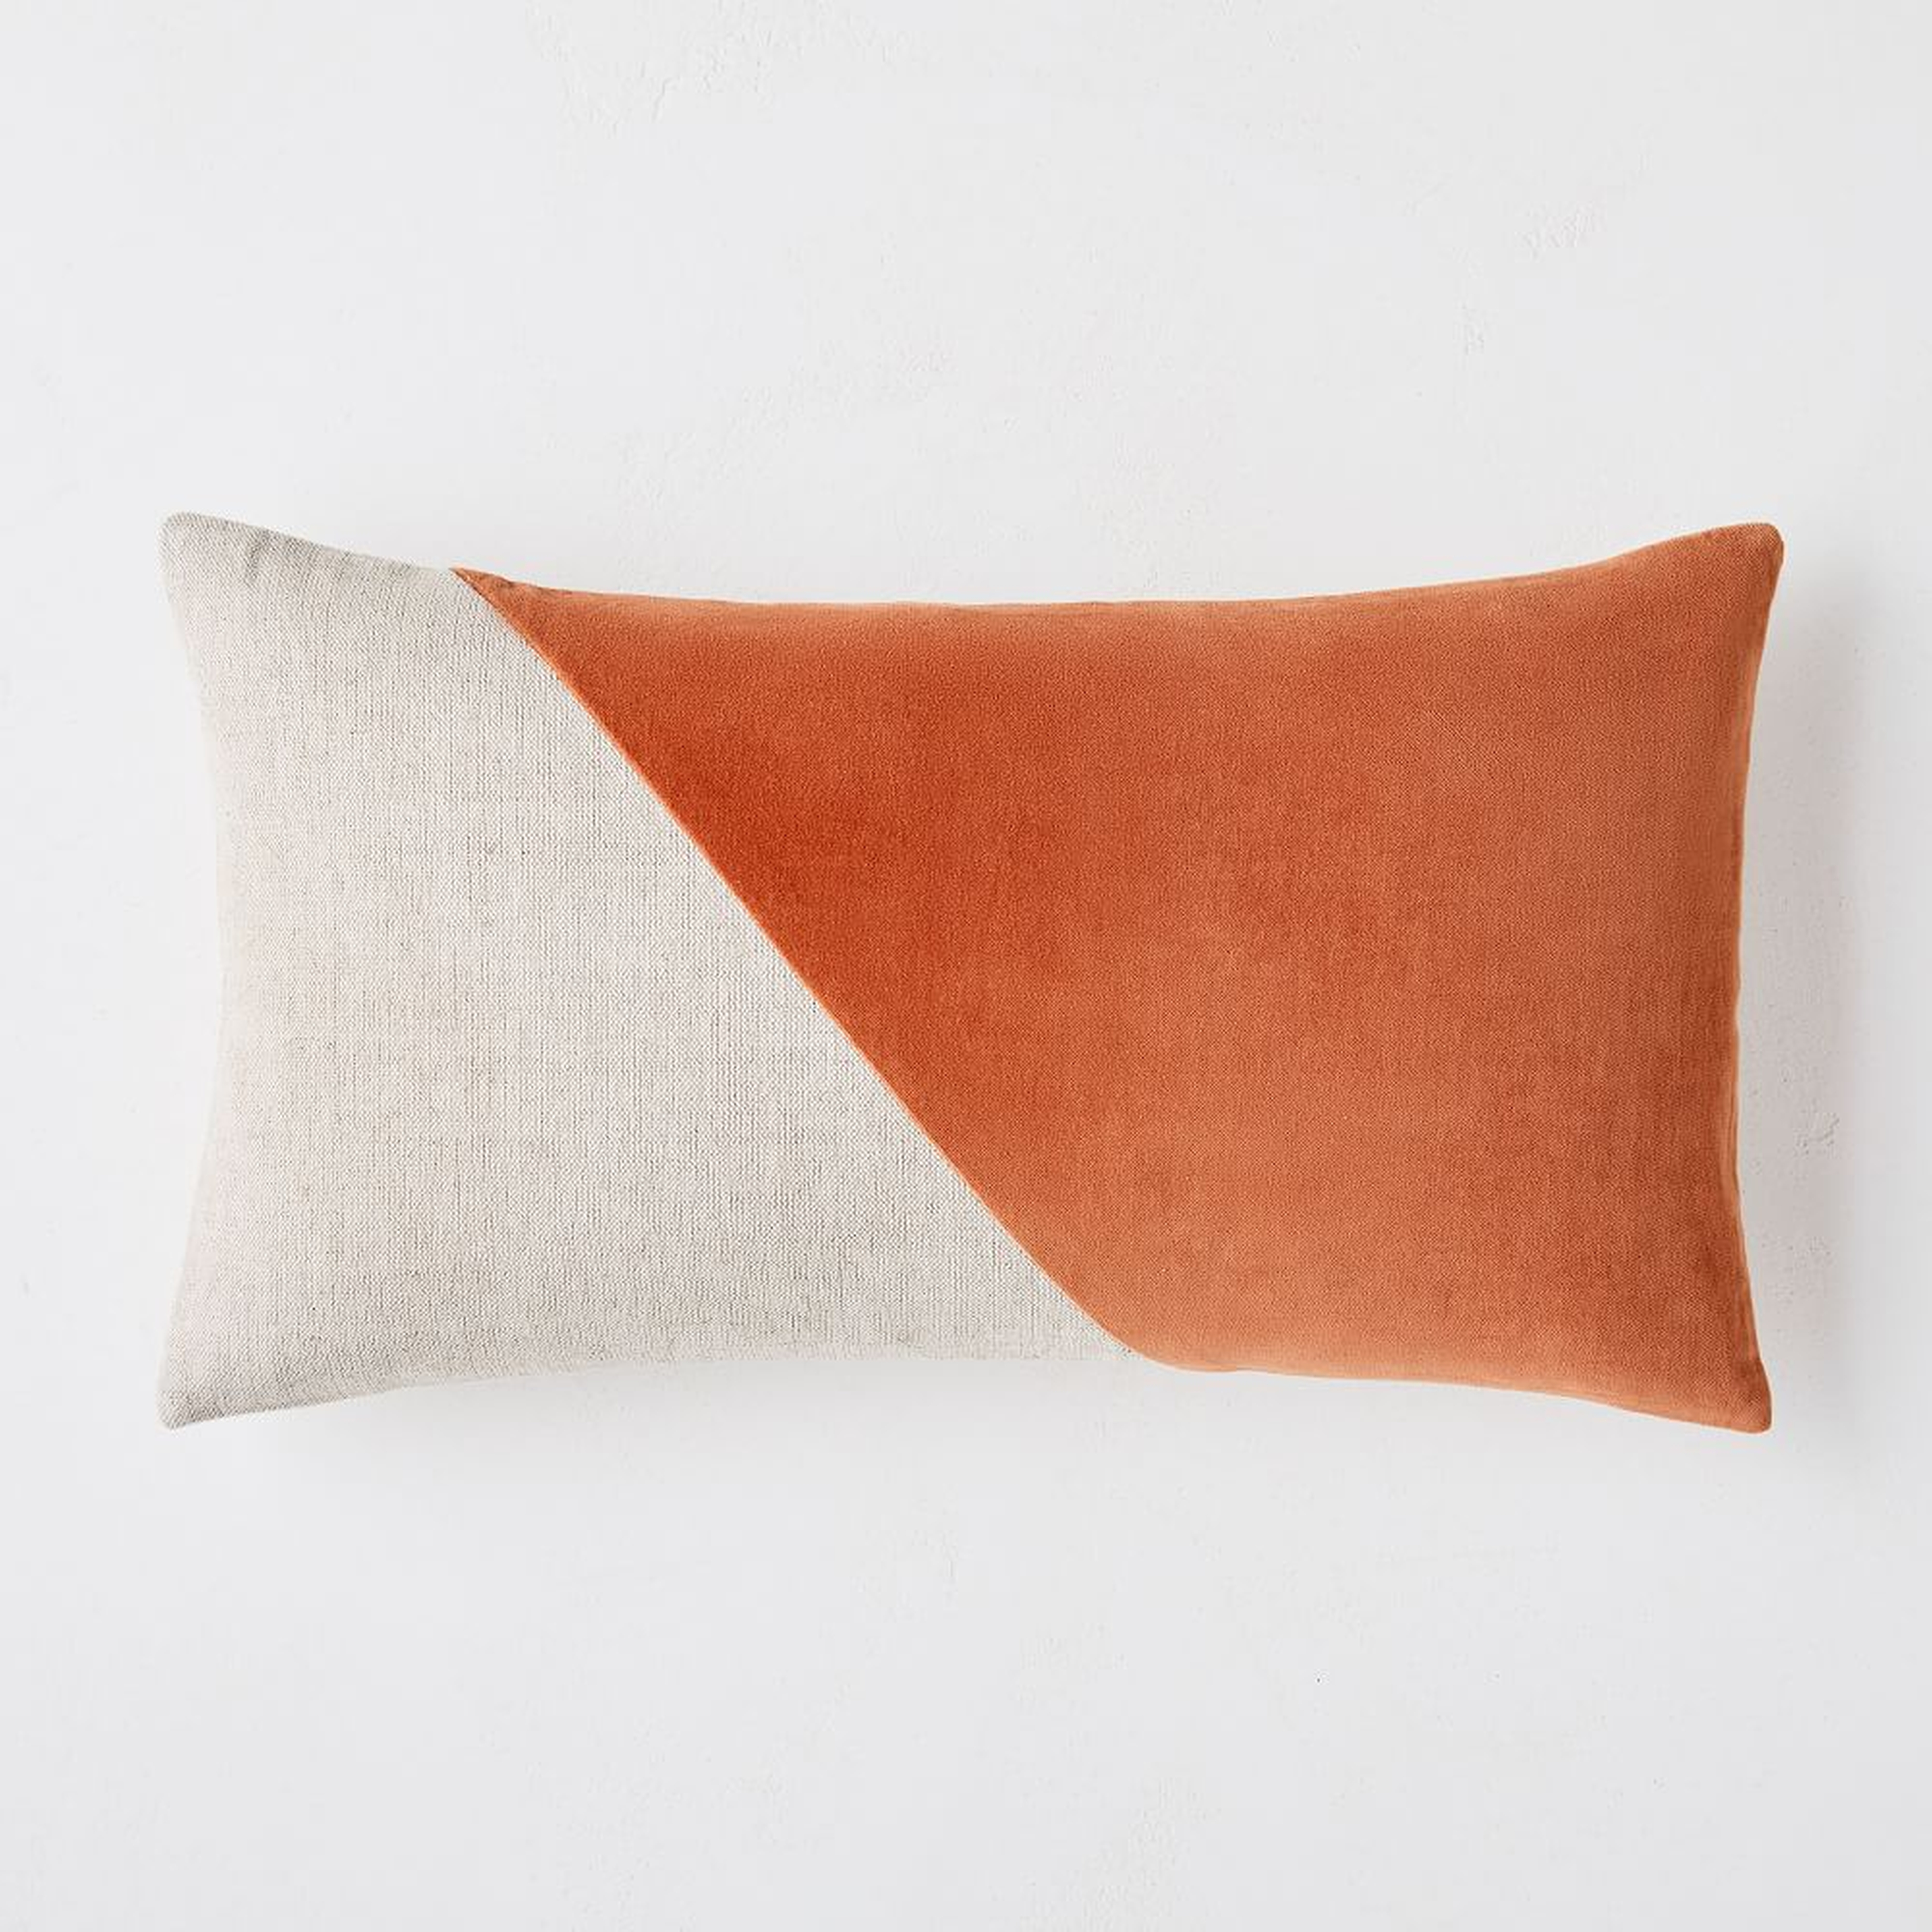 Cotton Linen + Velvet Corners Pillow Cover, 12"x21", Copper, Set of 2 - West Elm